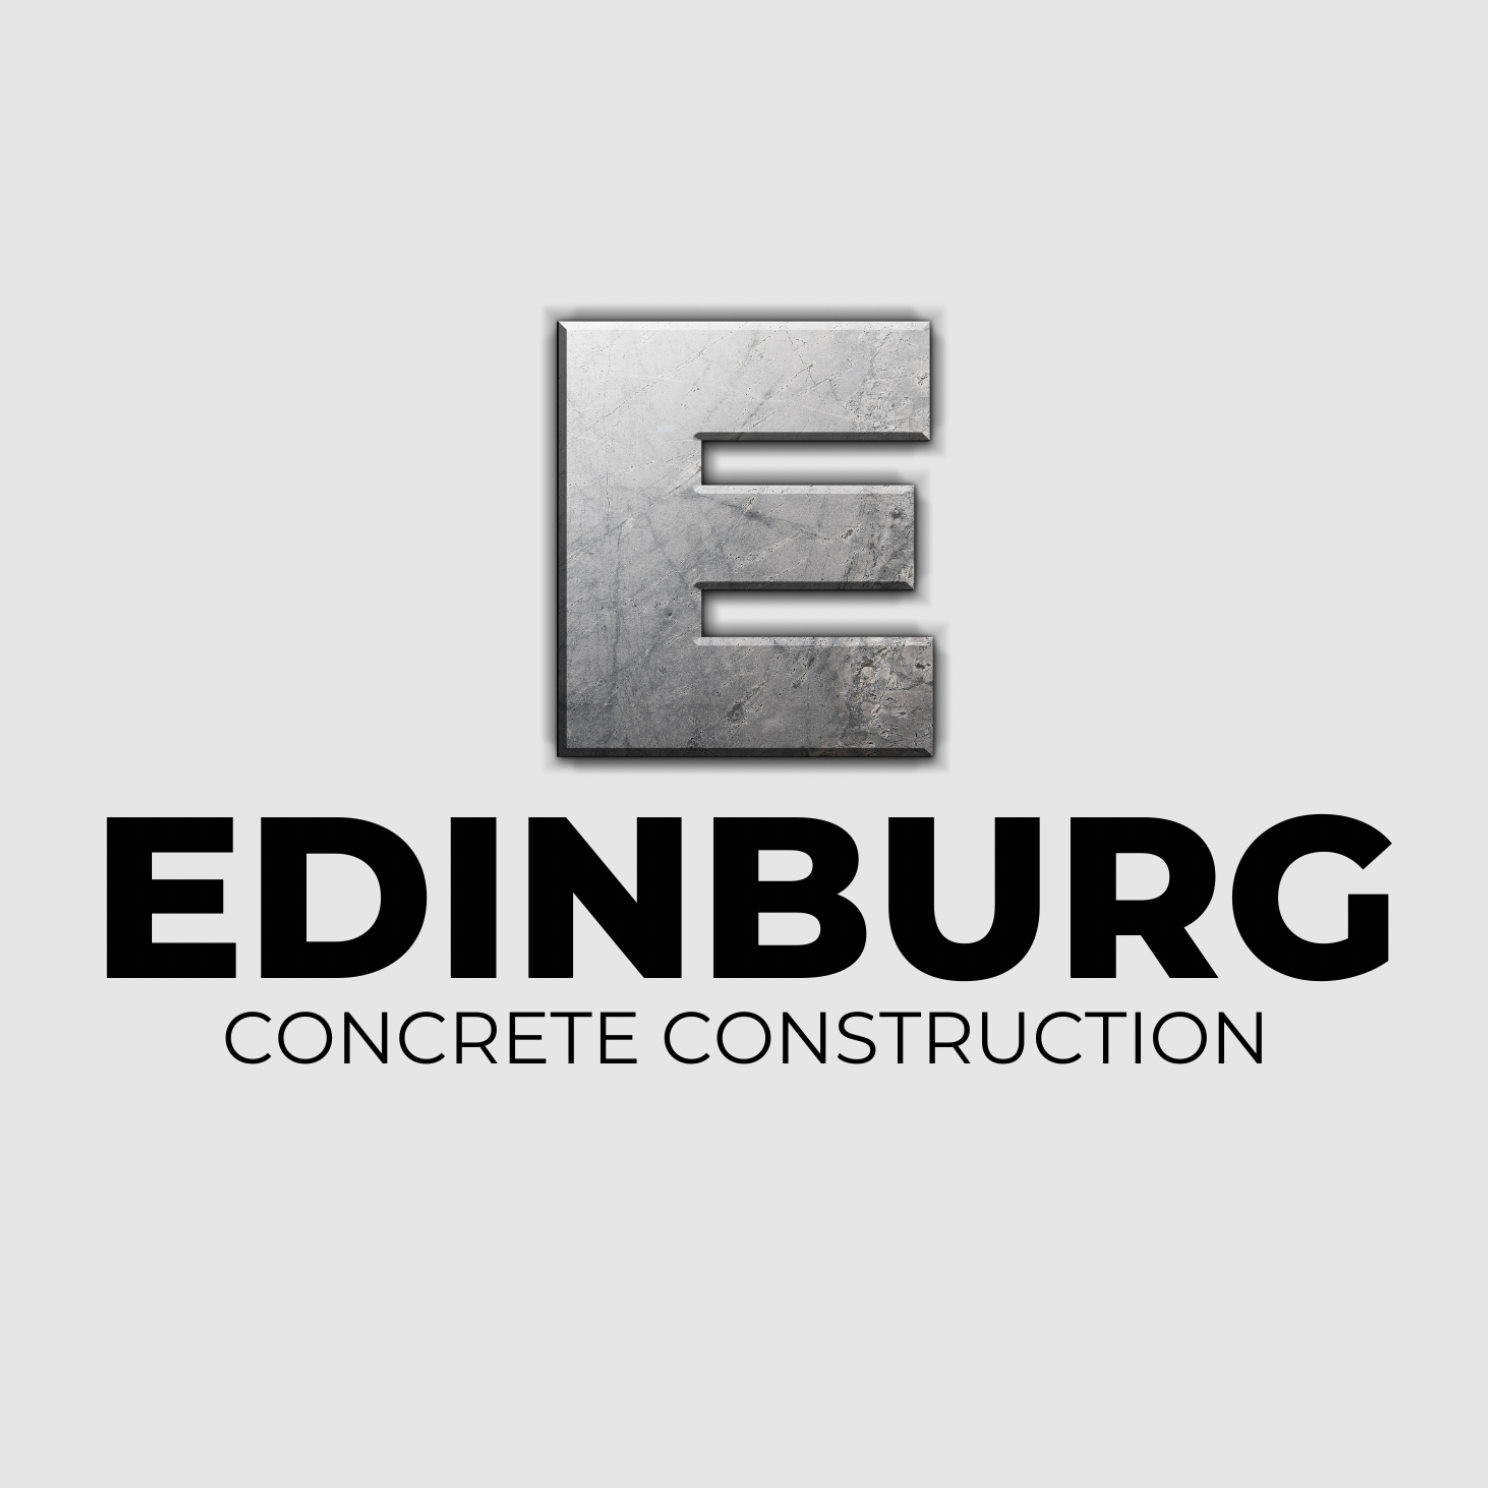 Edinburg-Concrete-Construction.png